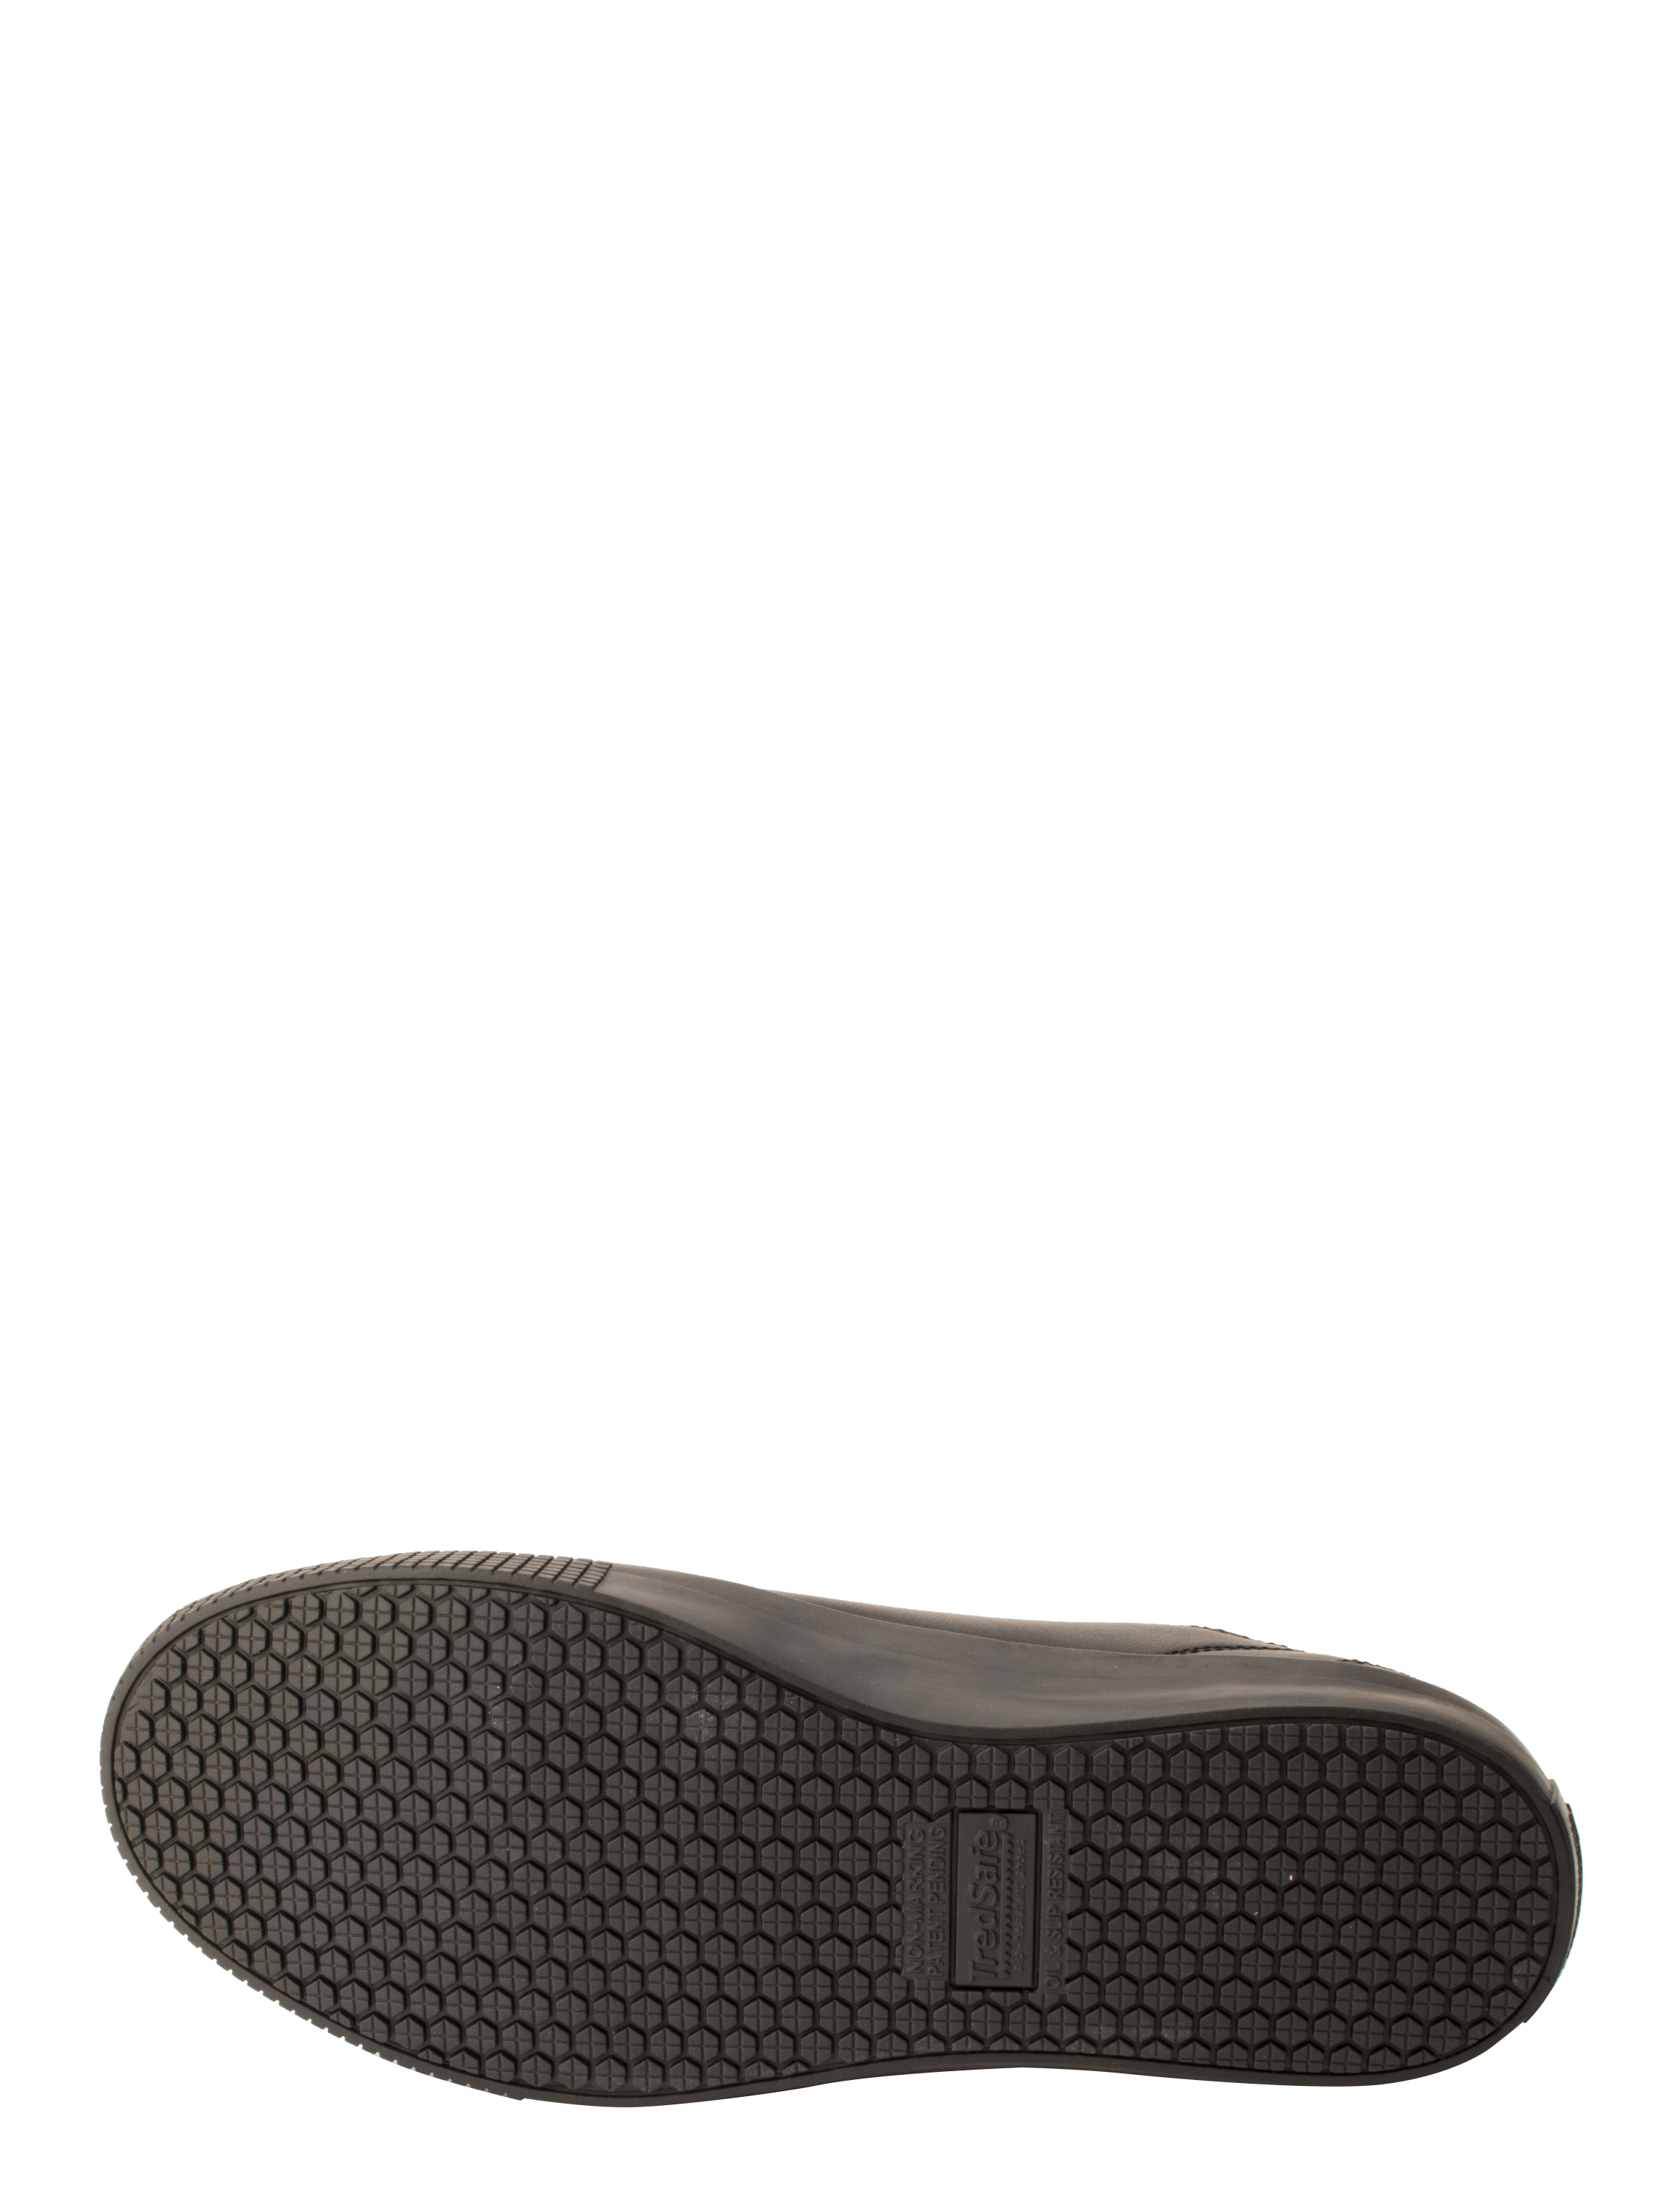 Tredsafe Unisex Kitch Slip Resistant Work Shoe - image 3 of 4